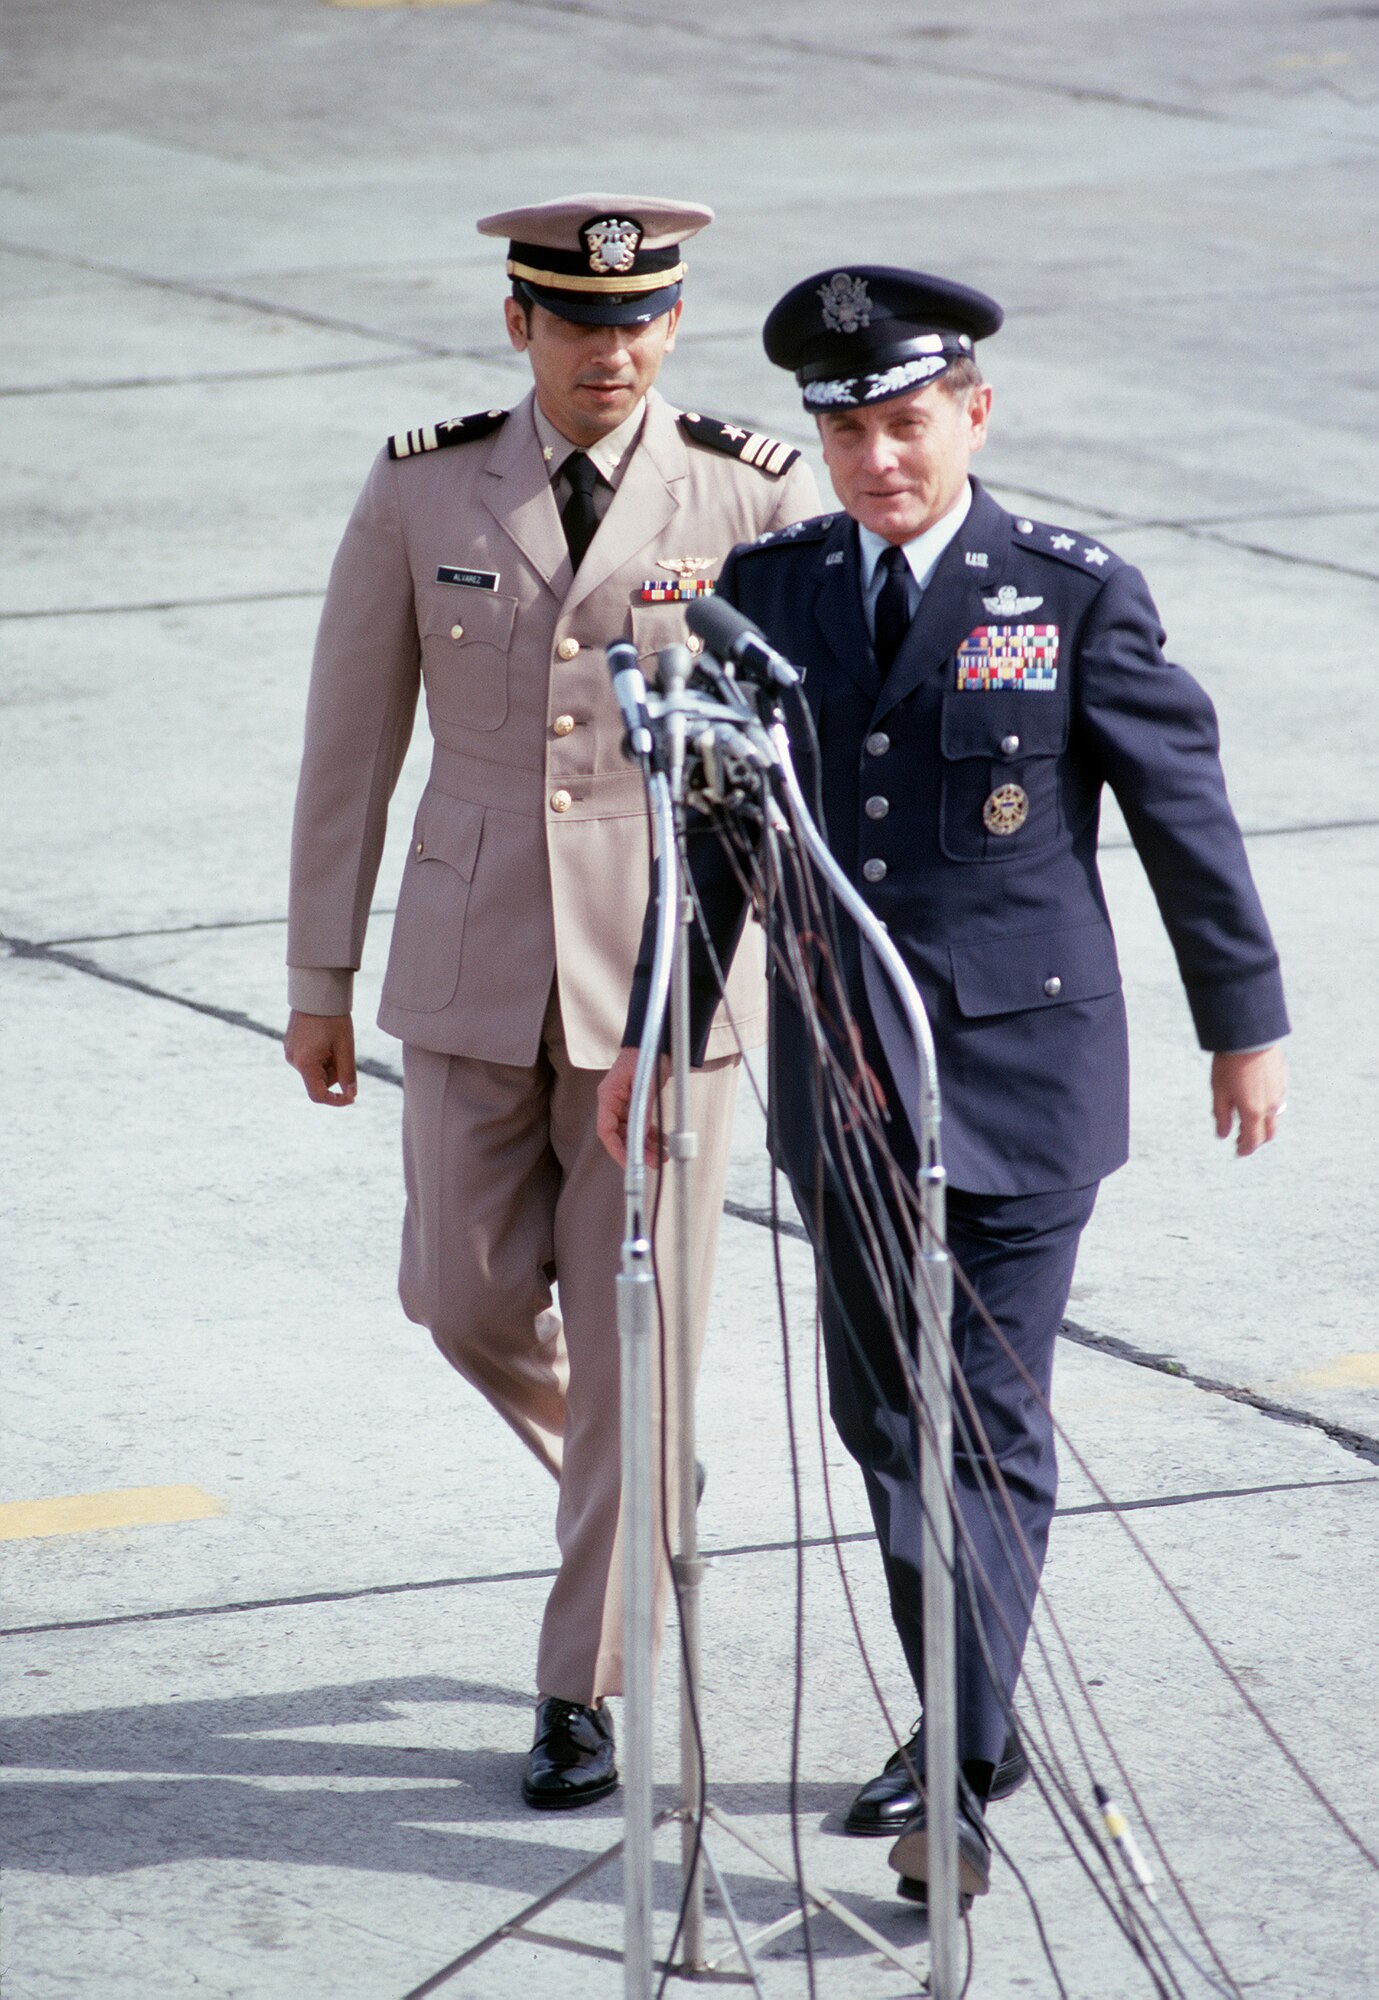 Two men in nice uniforms walk towards some microphones.